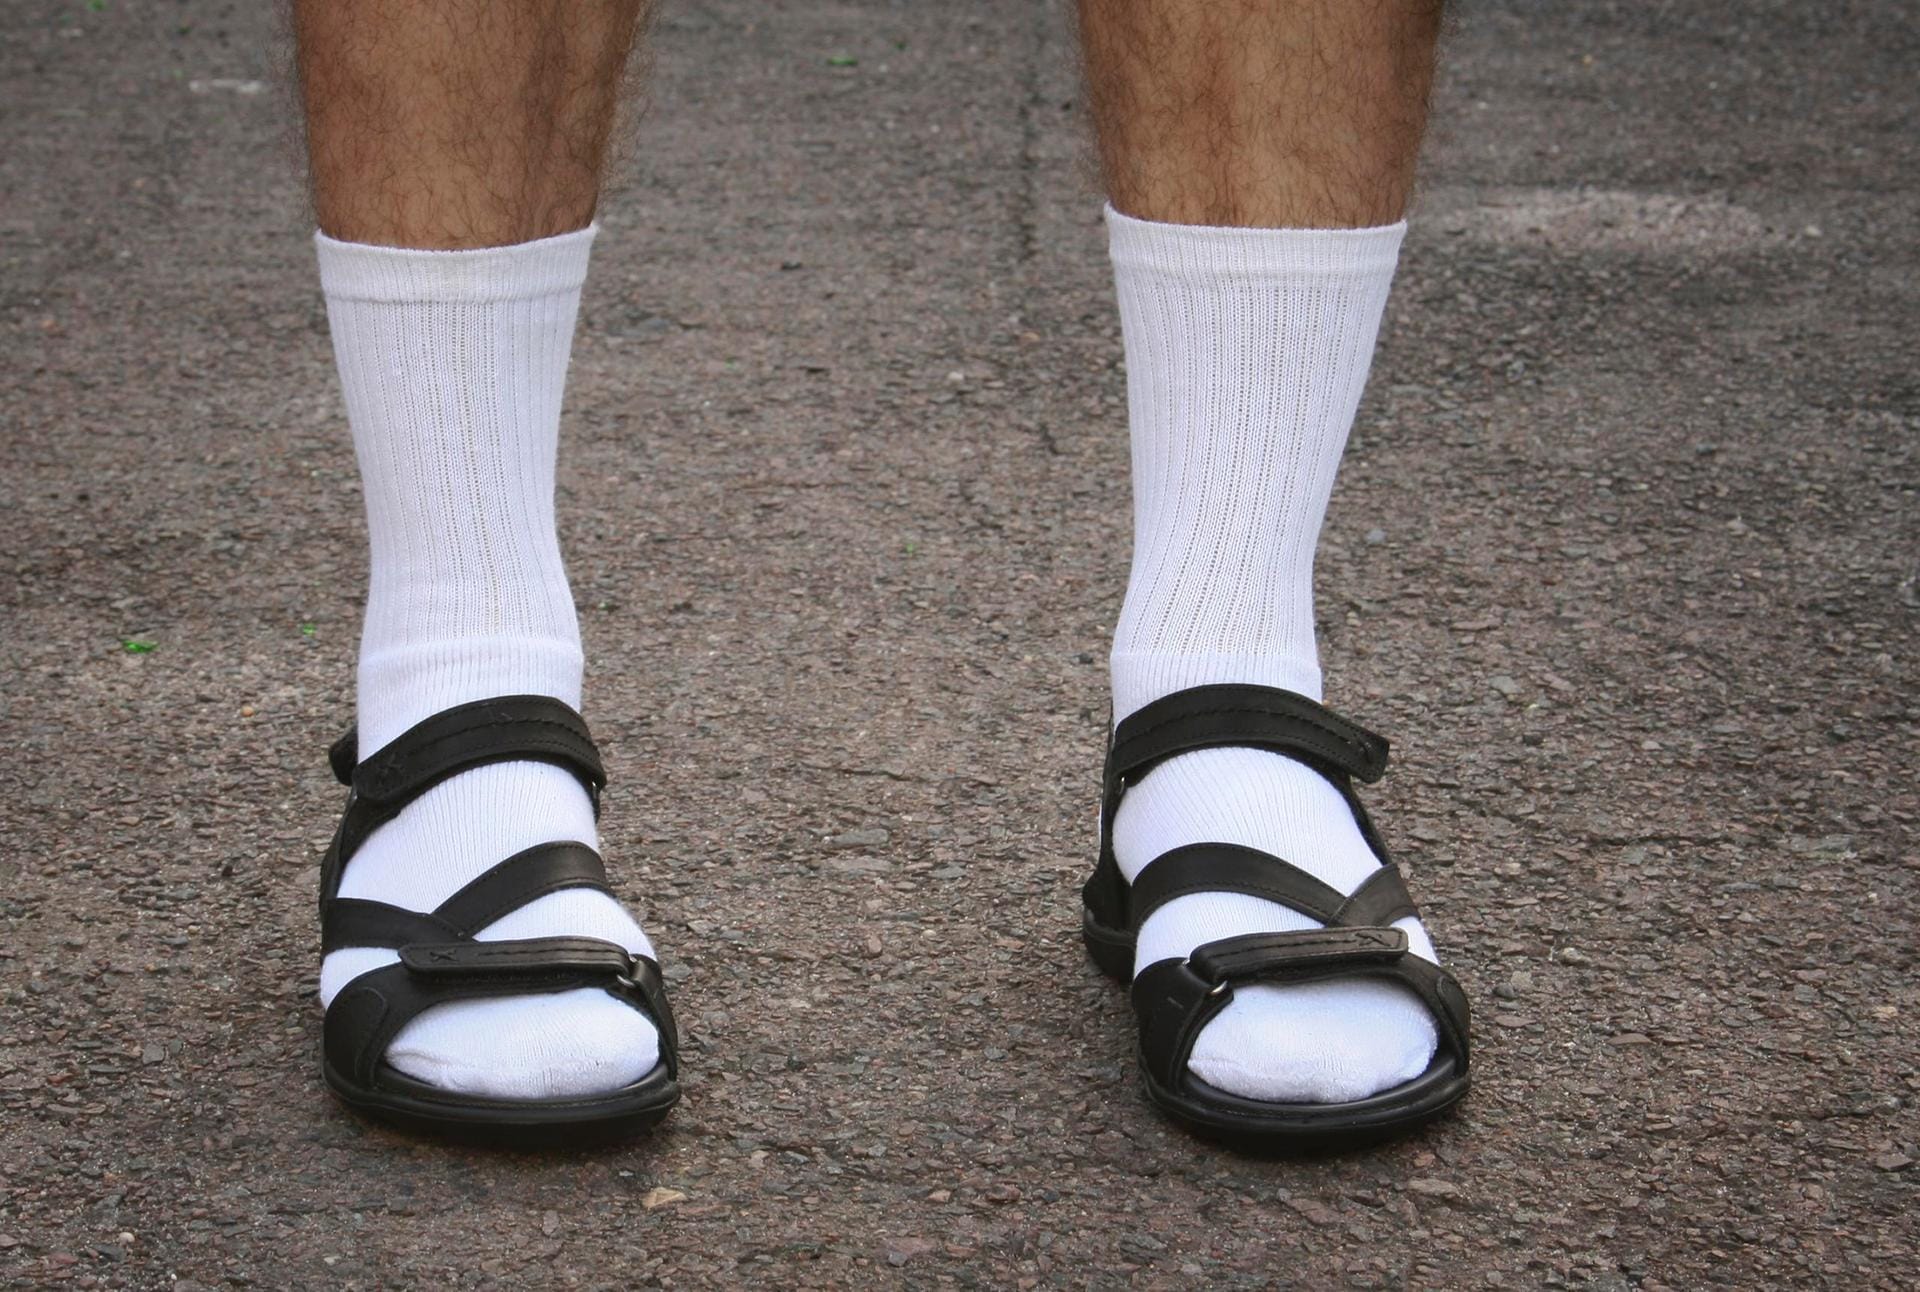 Bitte nicht: Sandalen mit Socken waren noch nie schön! Weder im Büro noch im Urlaub.